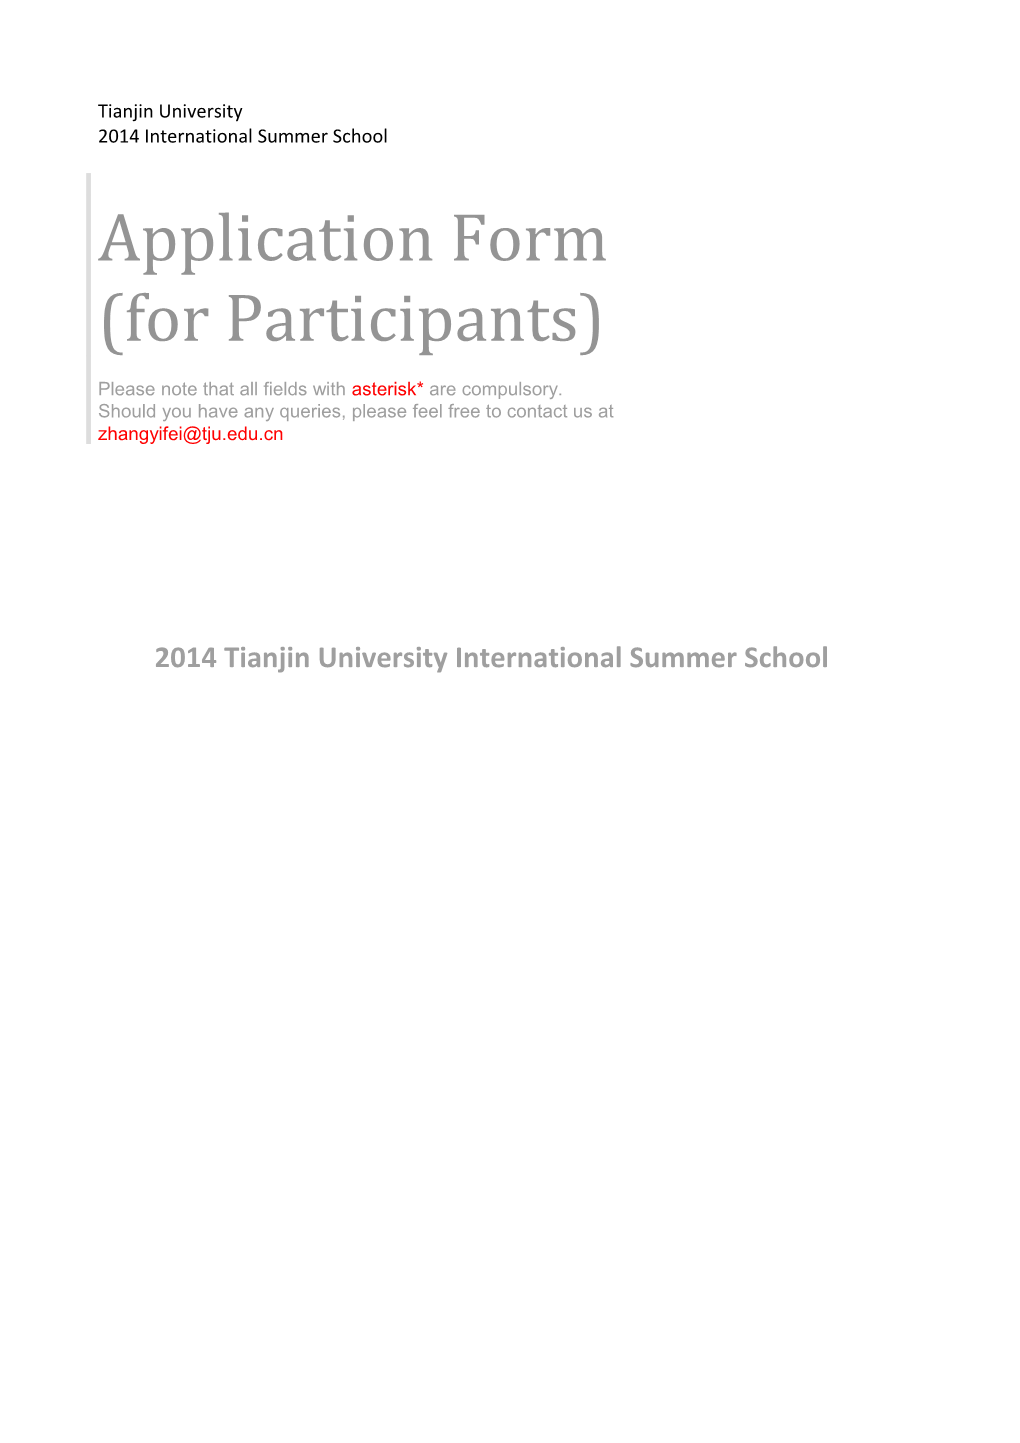 Application Form (For Participants)